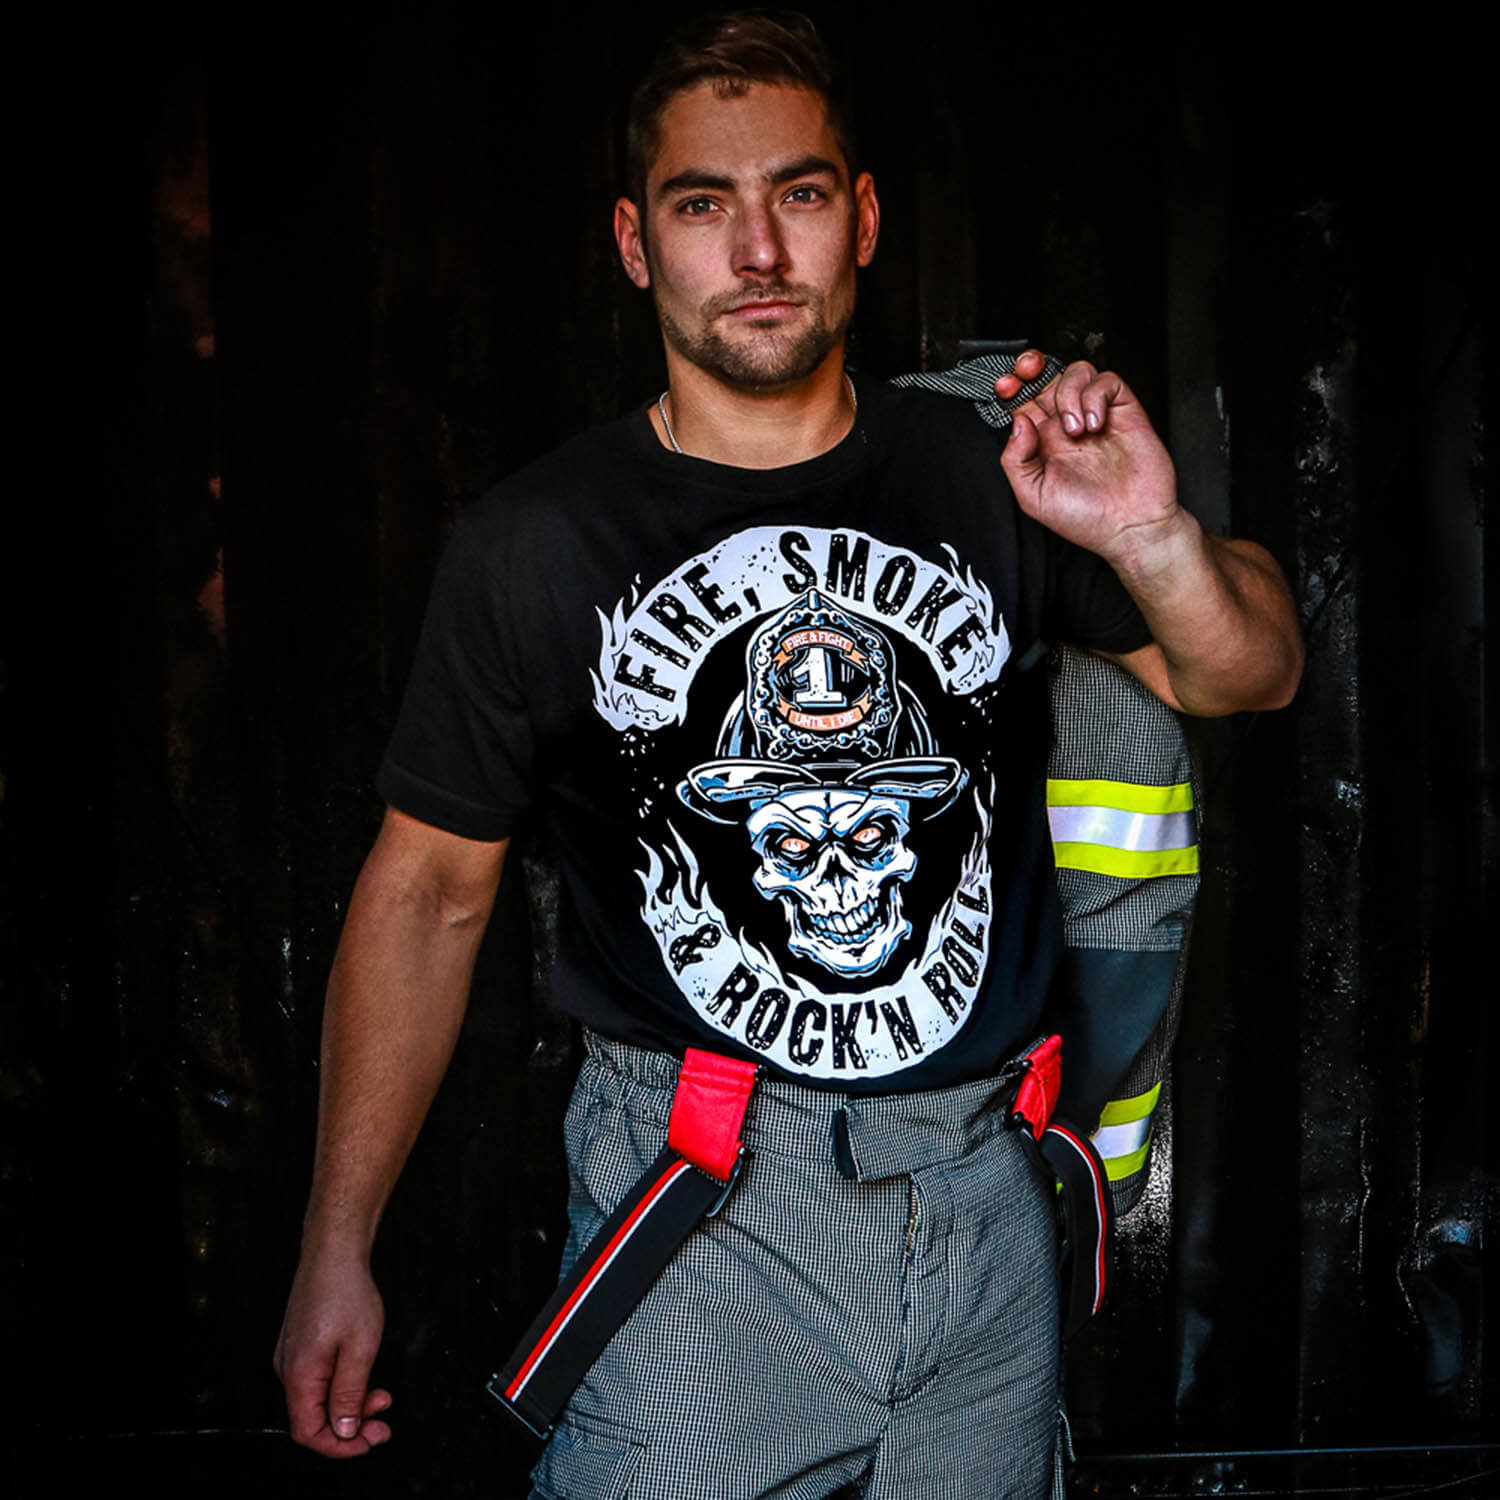 Fire Smoke Firefighter Shirt Männer